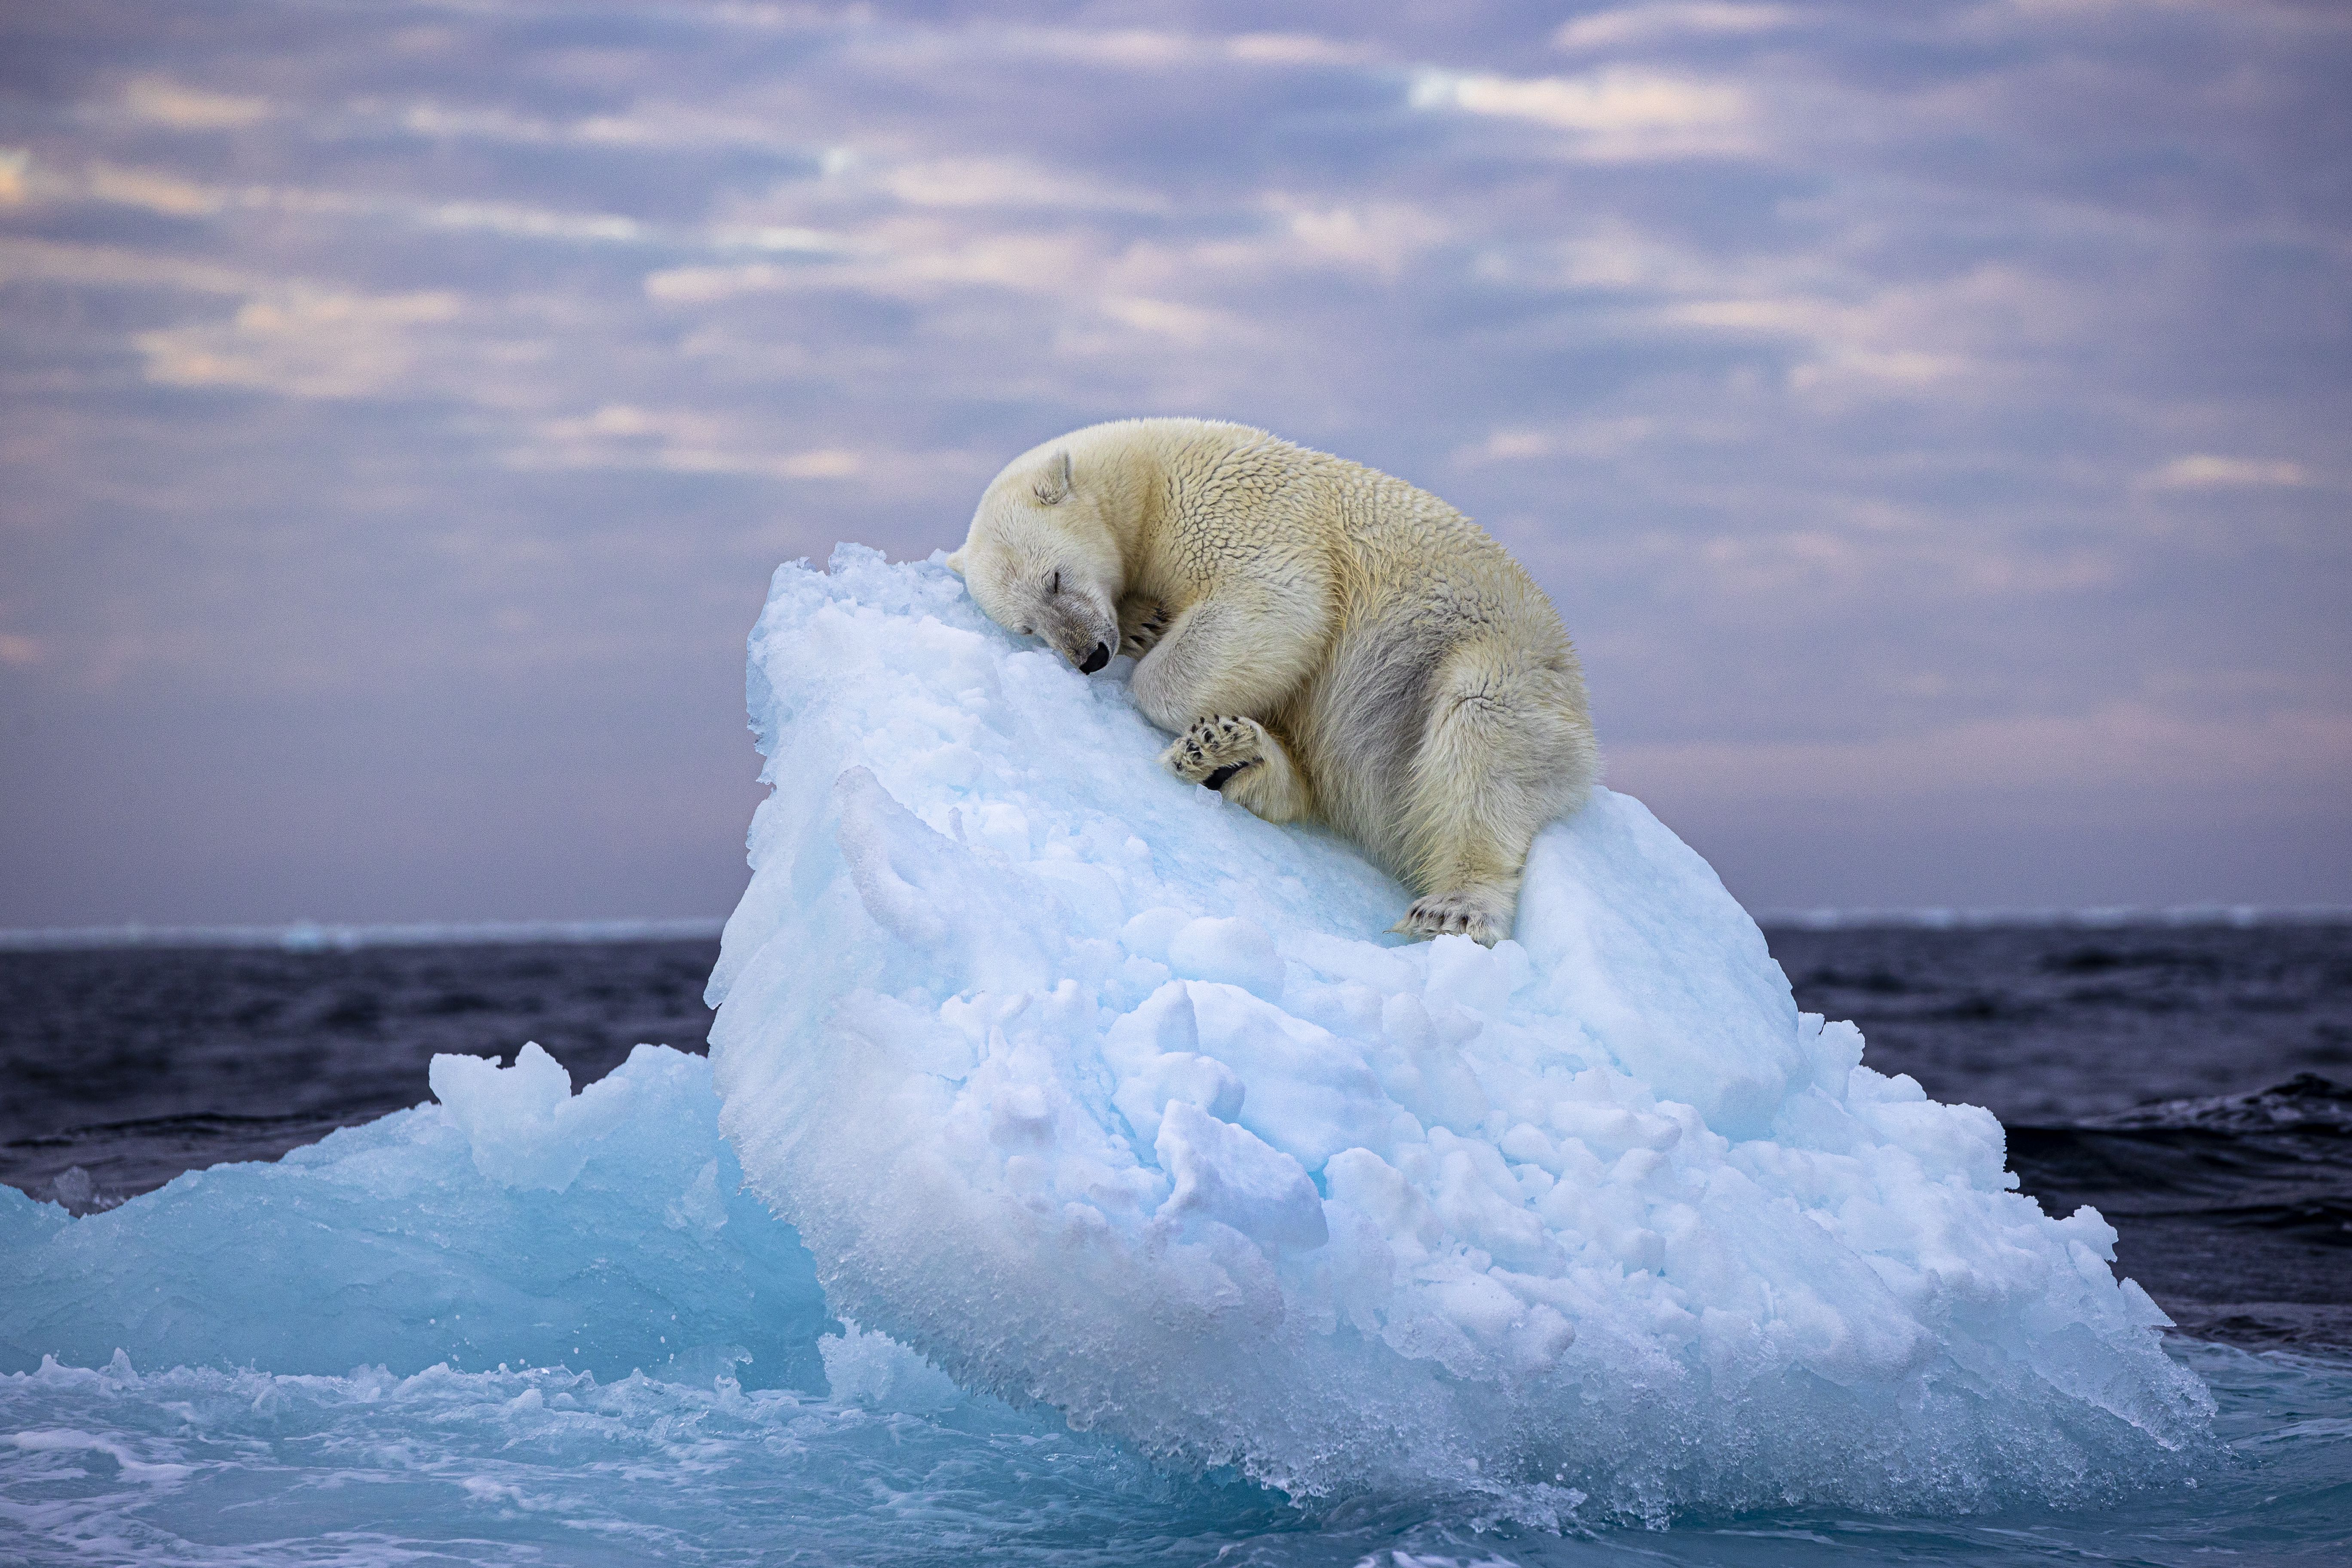 In diesem coolen Schnappschuss der britischen Fotografin Nima Sarikhani schlägt ein Eisbär vor dem norwegischen Spitzbergen-Archipel ein Bett aus einem kleinen Eisberg, bevor er einschläft.